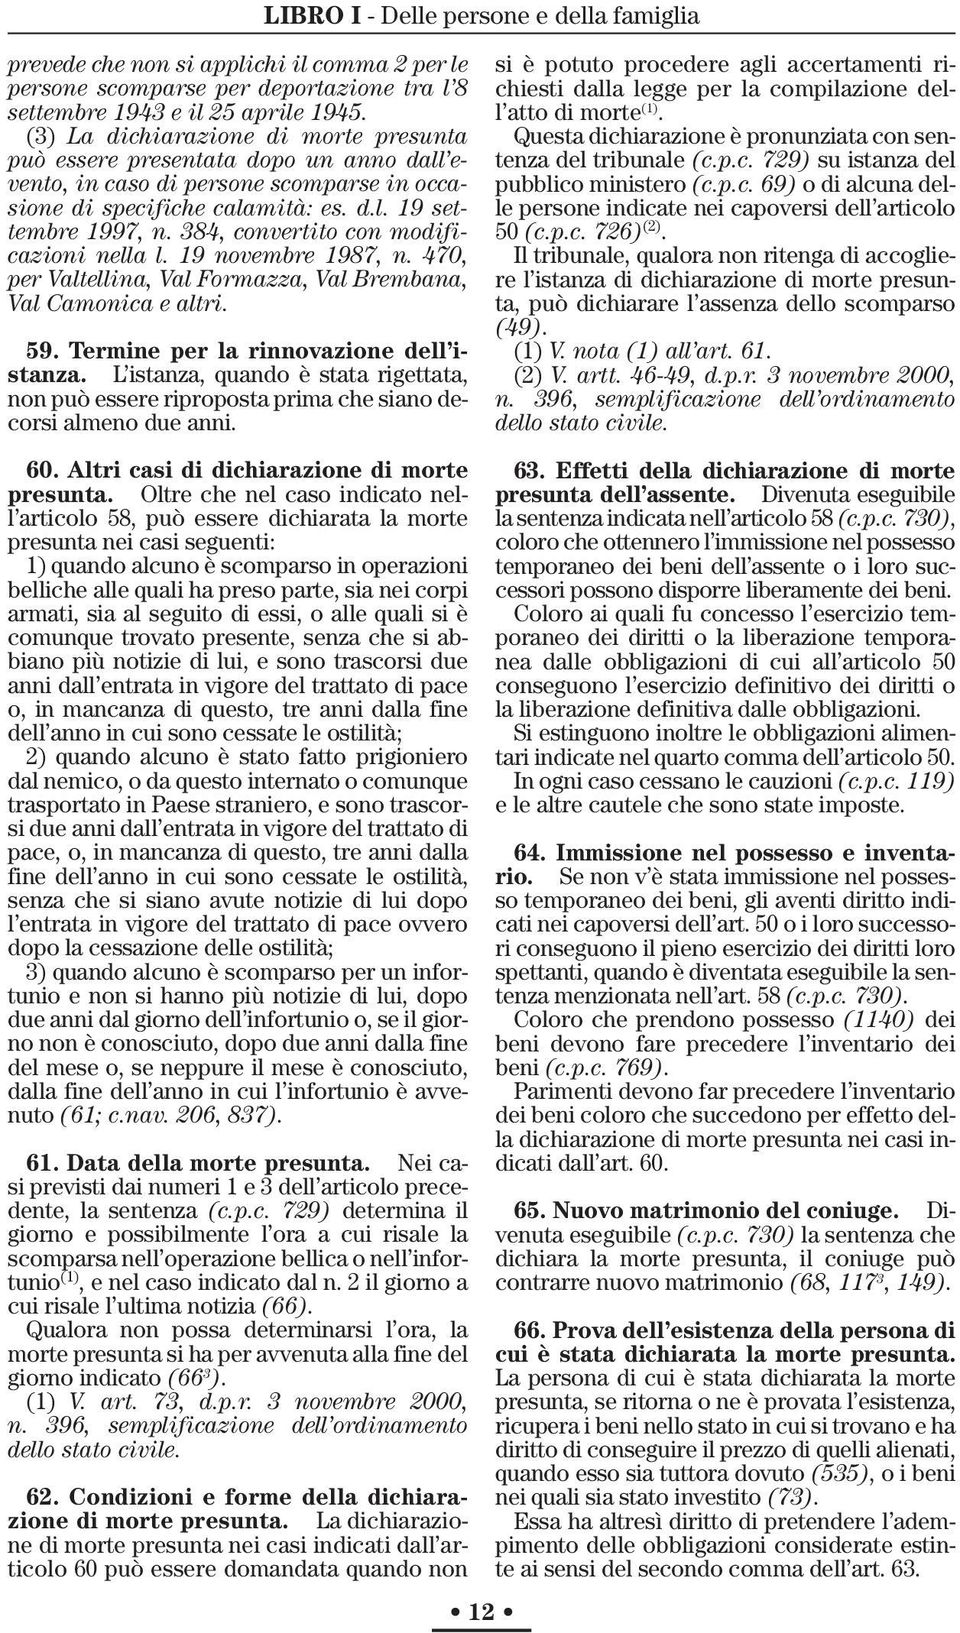 384, convertito con modificazioni nella l. 19 novembre 1987, n. 470, per Valtellina, Val Formazza, Val Brembana, Val Camonica e altri. 59. Termine per la rinnovazione dell istanza.